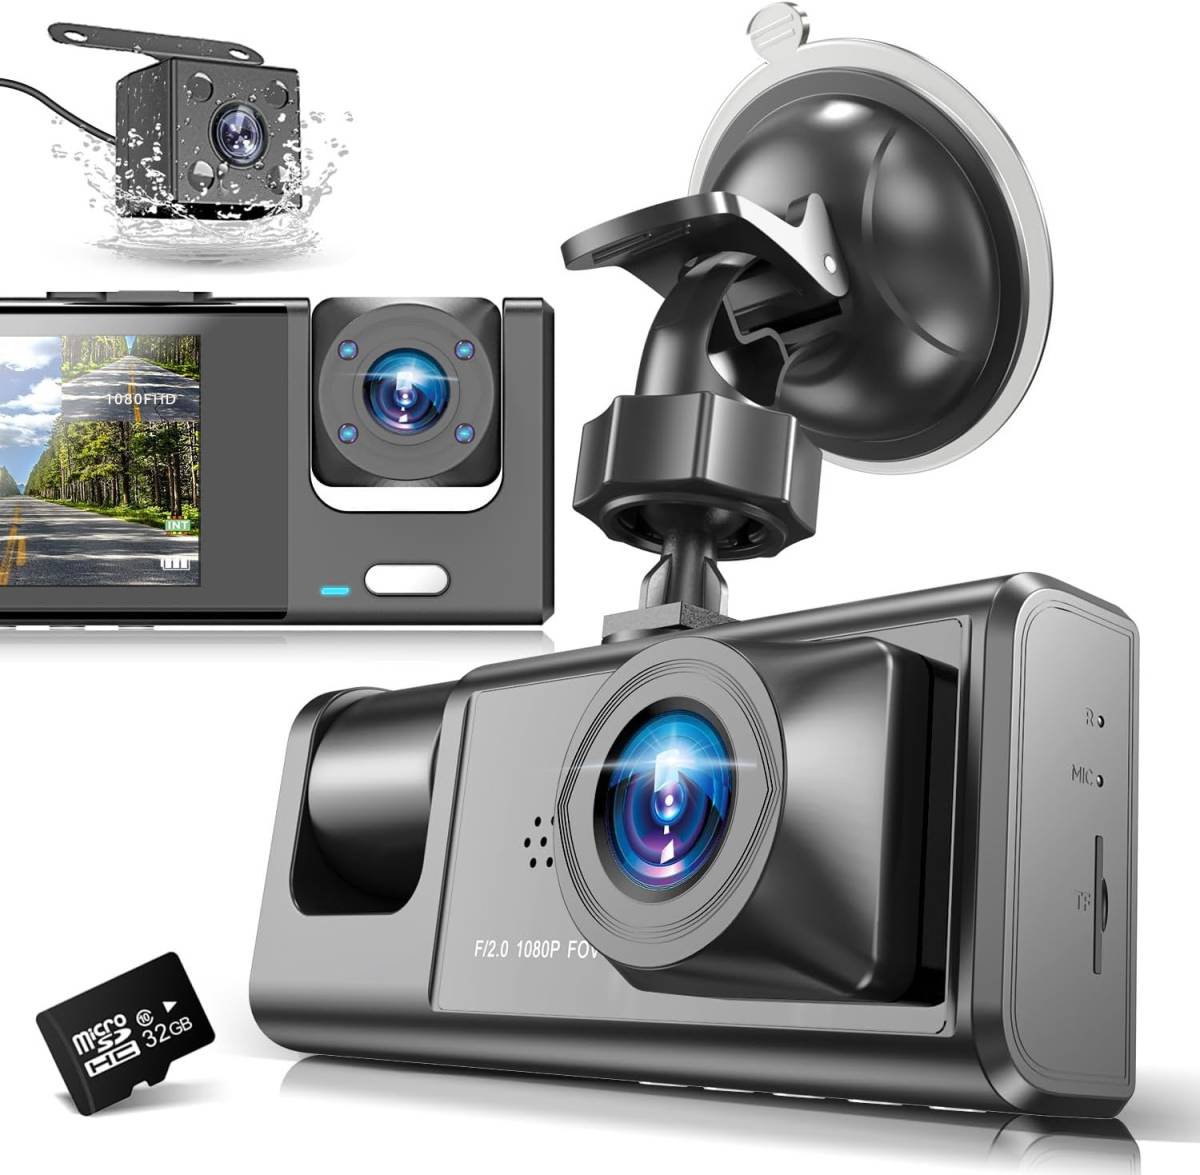 3カメラ ドライブレコーダー DEFART. 1080P フルHD画質 .360度 全方位保護 170度超広角 3カメラ同時録画 32GB高速SDカード付き_画像1